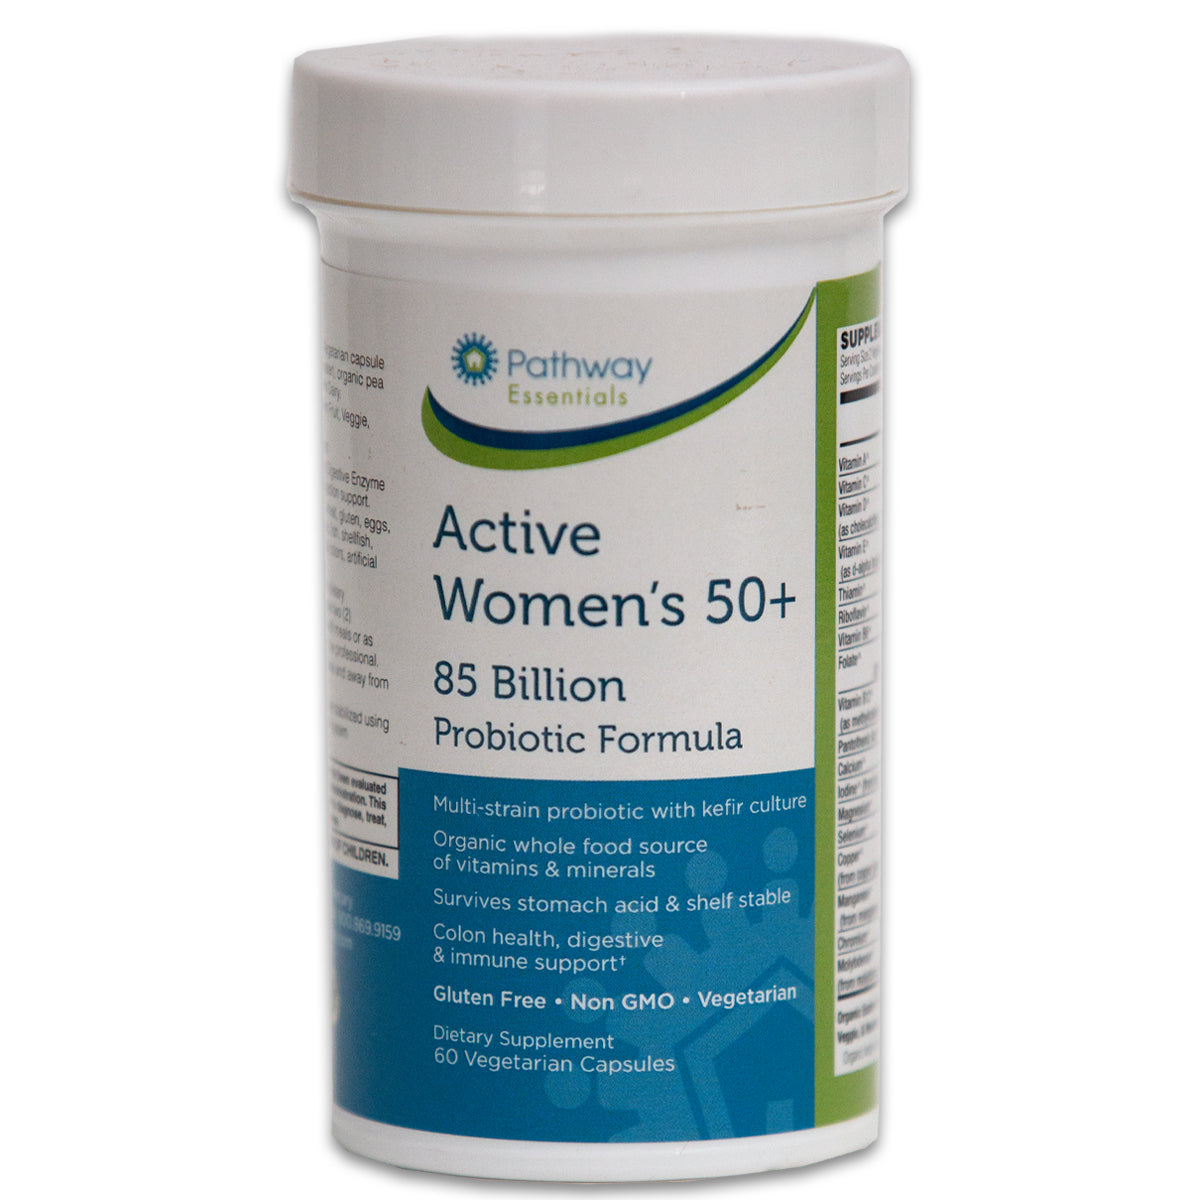 Active Women’s 50+ 85 Billion Probiotic Formula